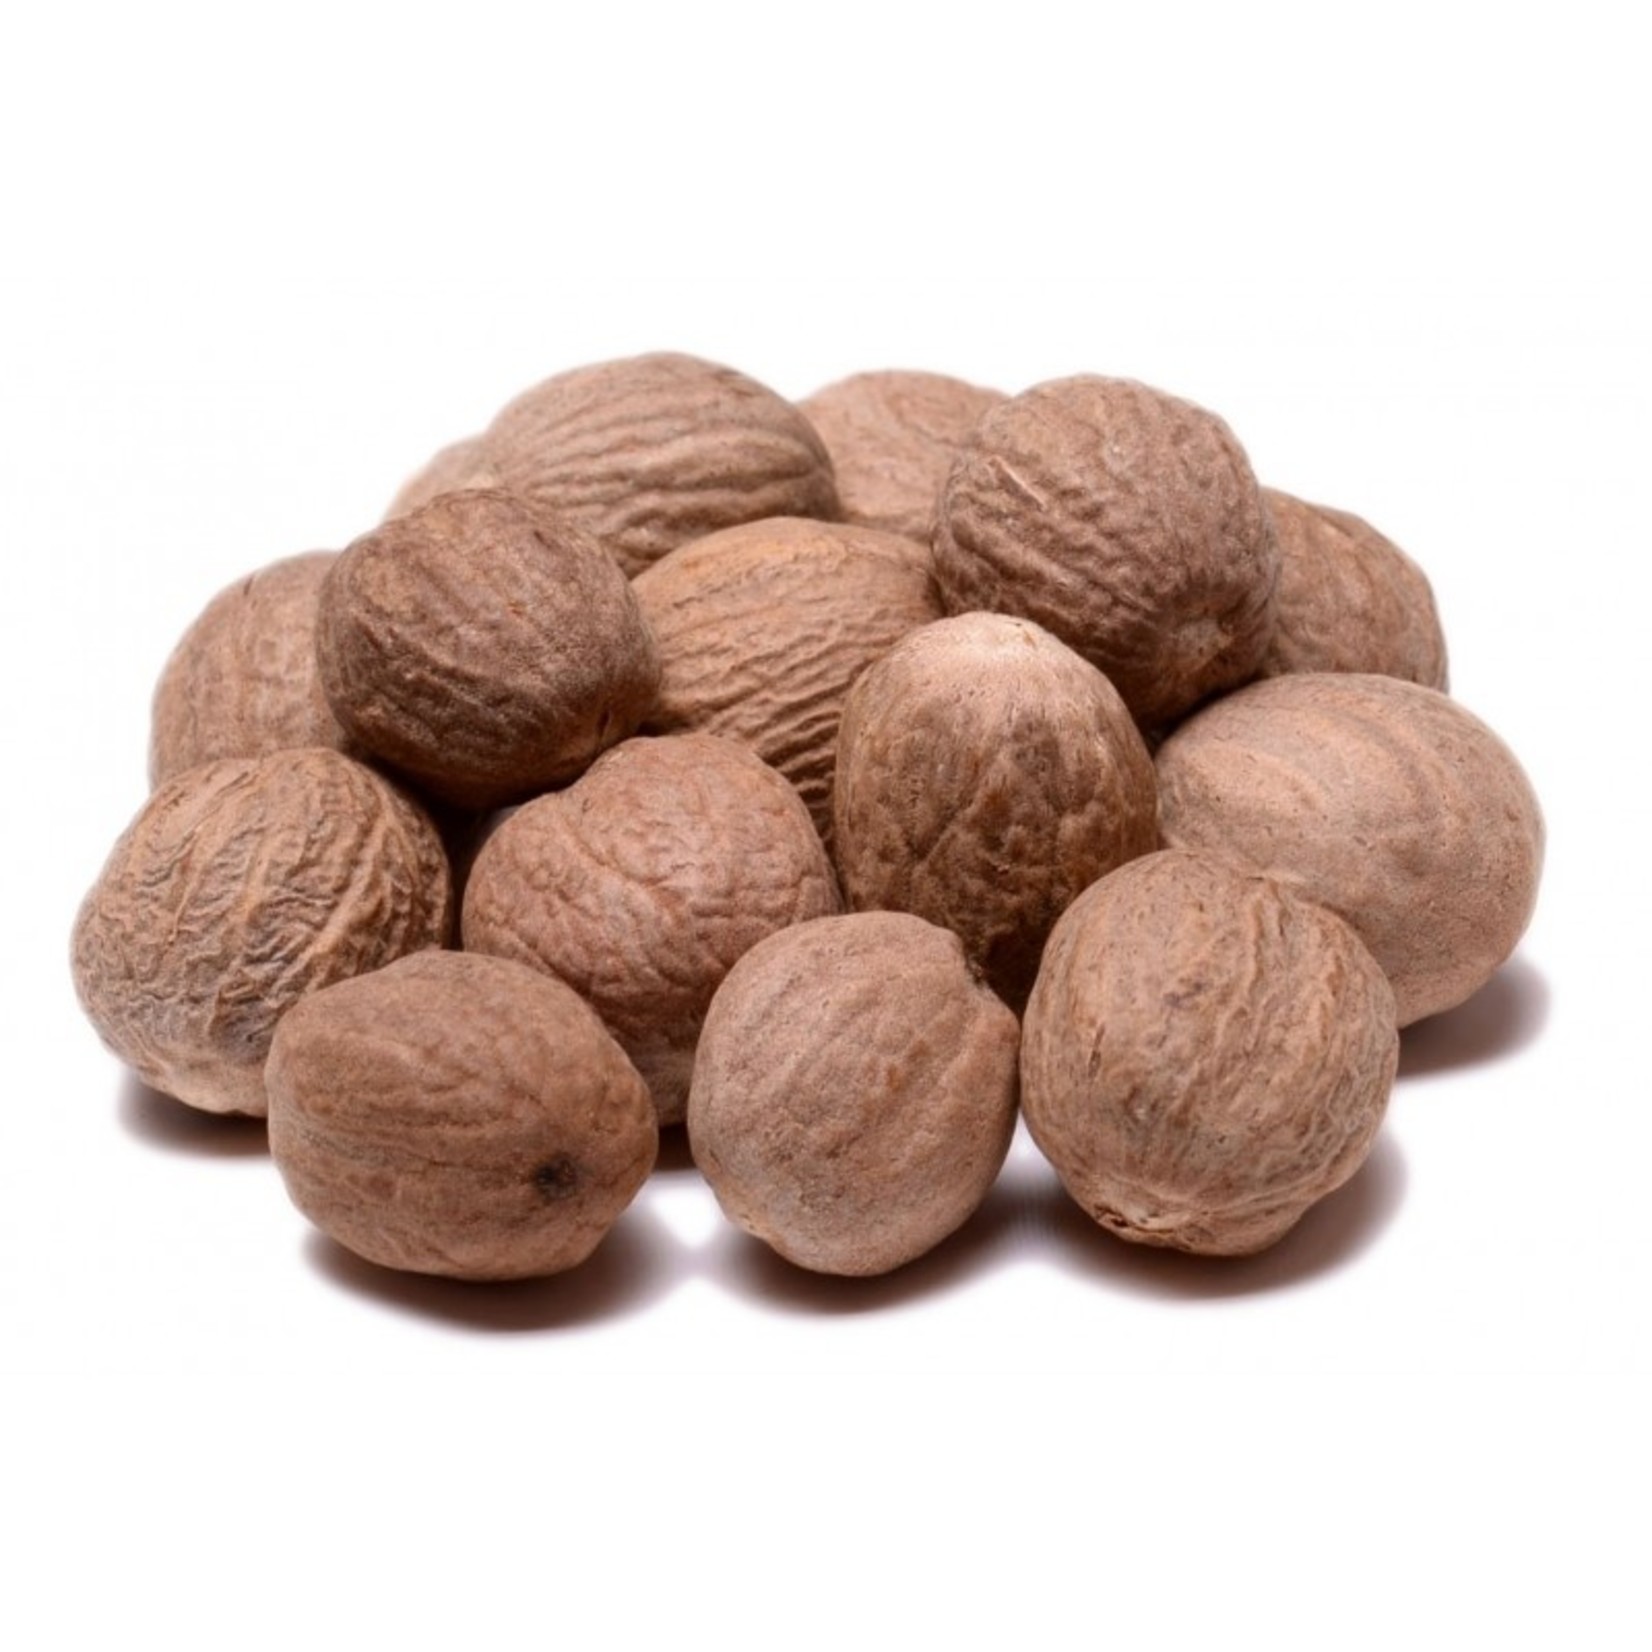 Whole Nutmeg 165g